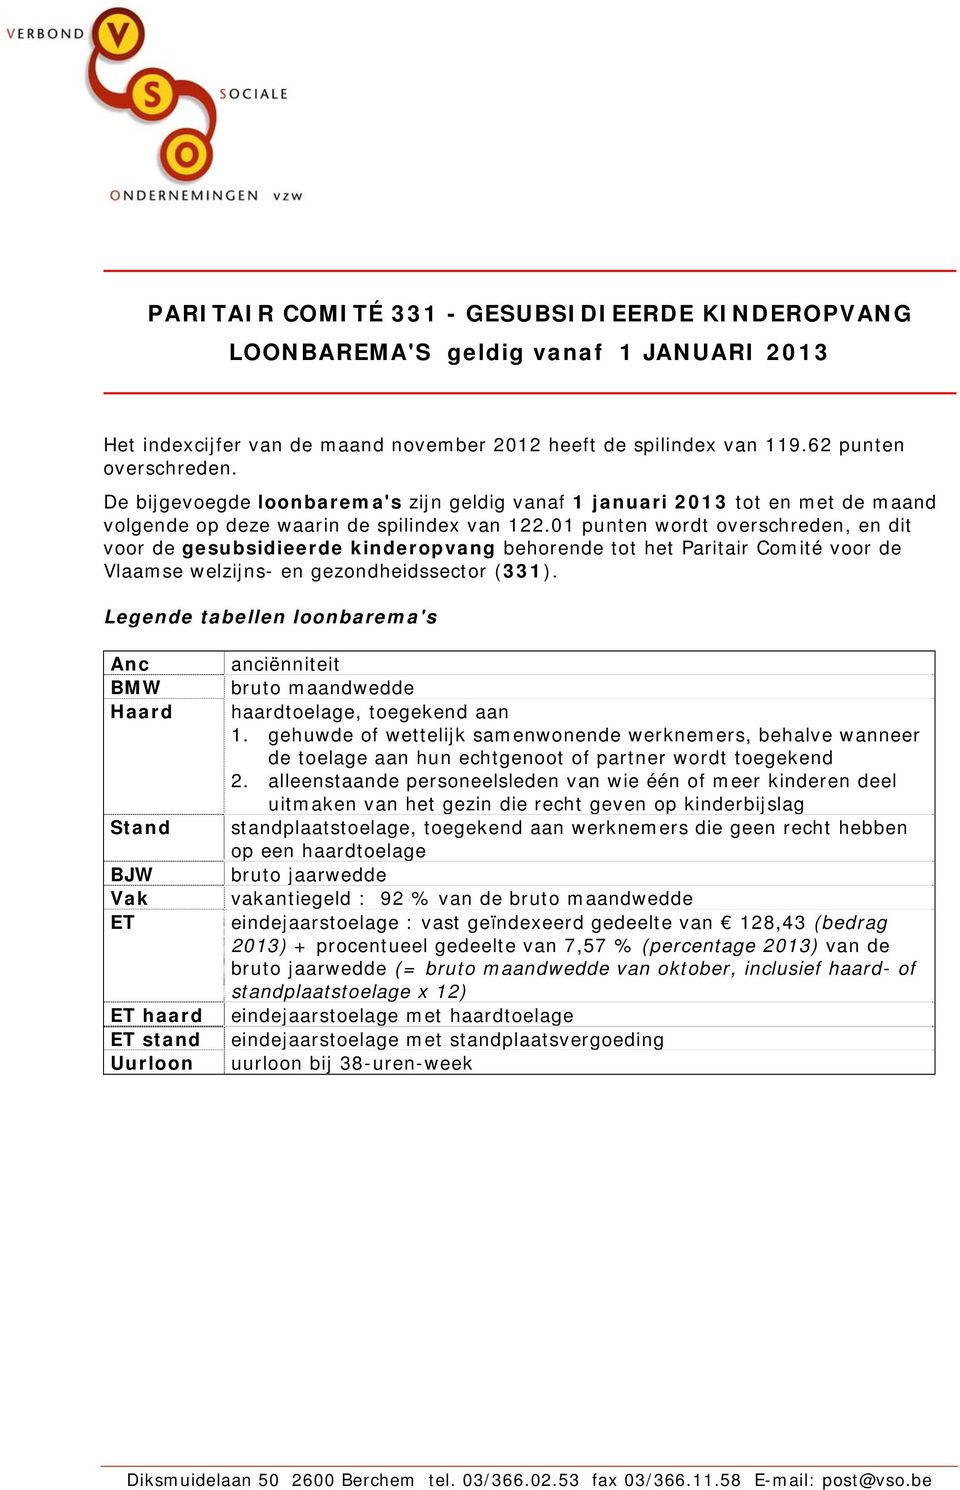 01 punten wordt overschreden, en dit voor de gesubsidieerde kinderopvang behorende tot het Paritair Comité voor de Vlaamse welzijns- en gezondheidssector (331).